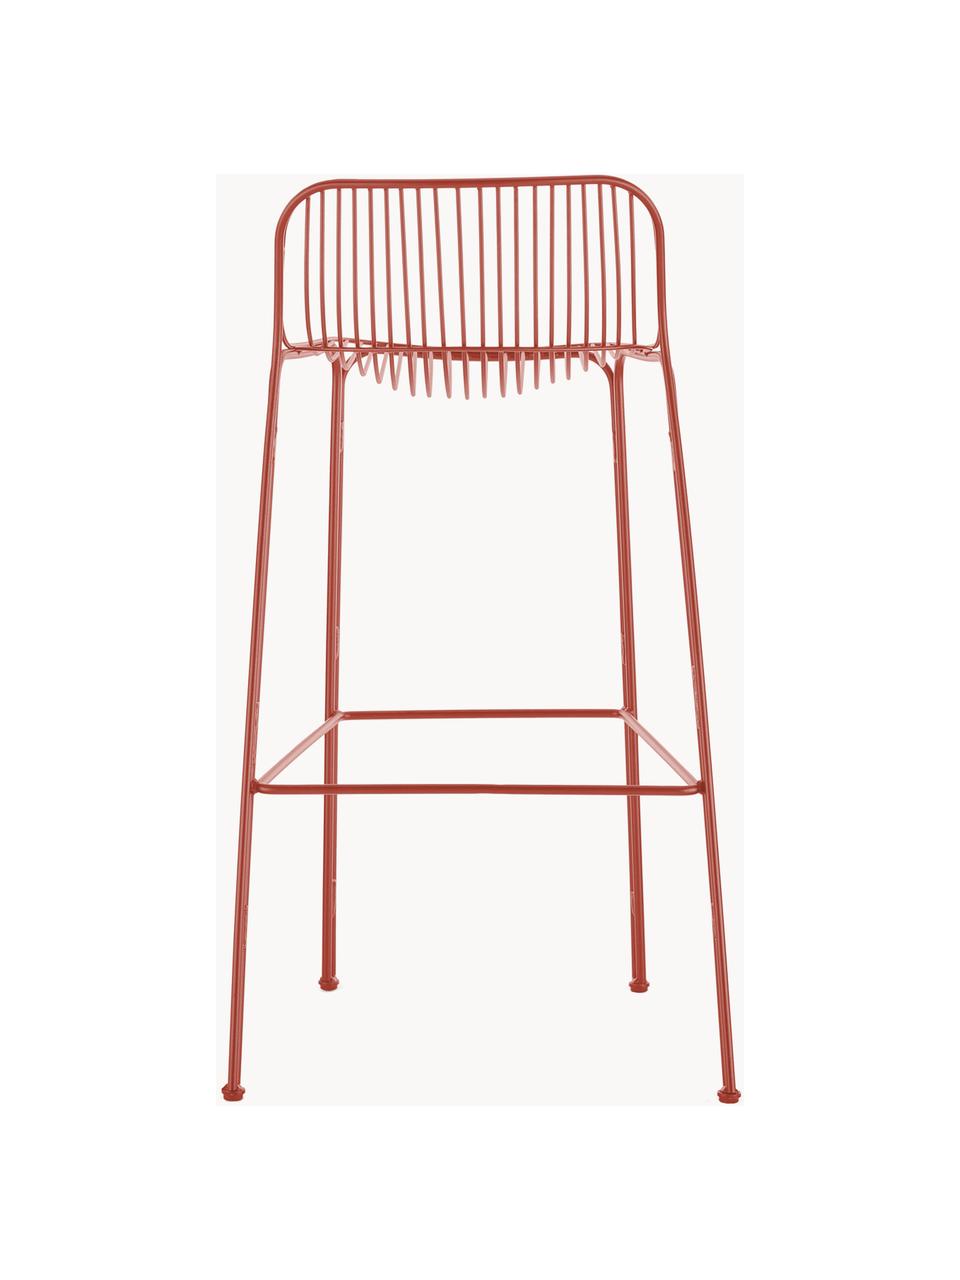 Ogrodowe krzesło barowe Hiray, Stal ocynkowana, lakierowana, Rdzawoczerwony, S 57 x W 96 cm